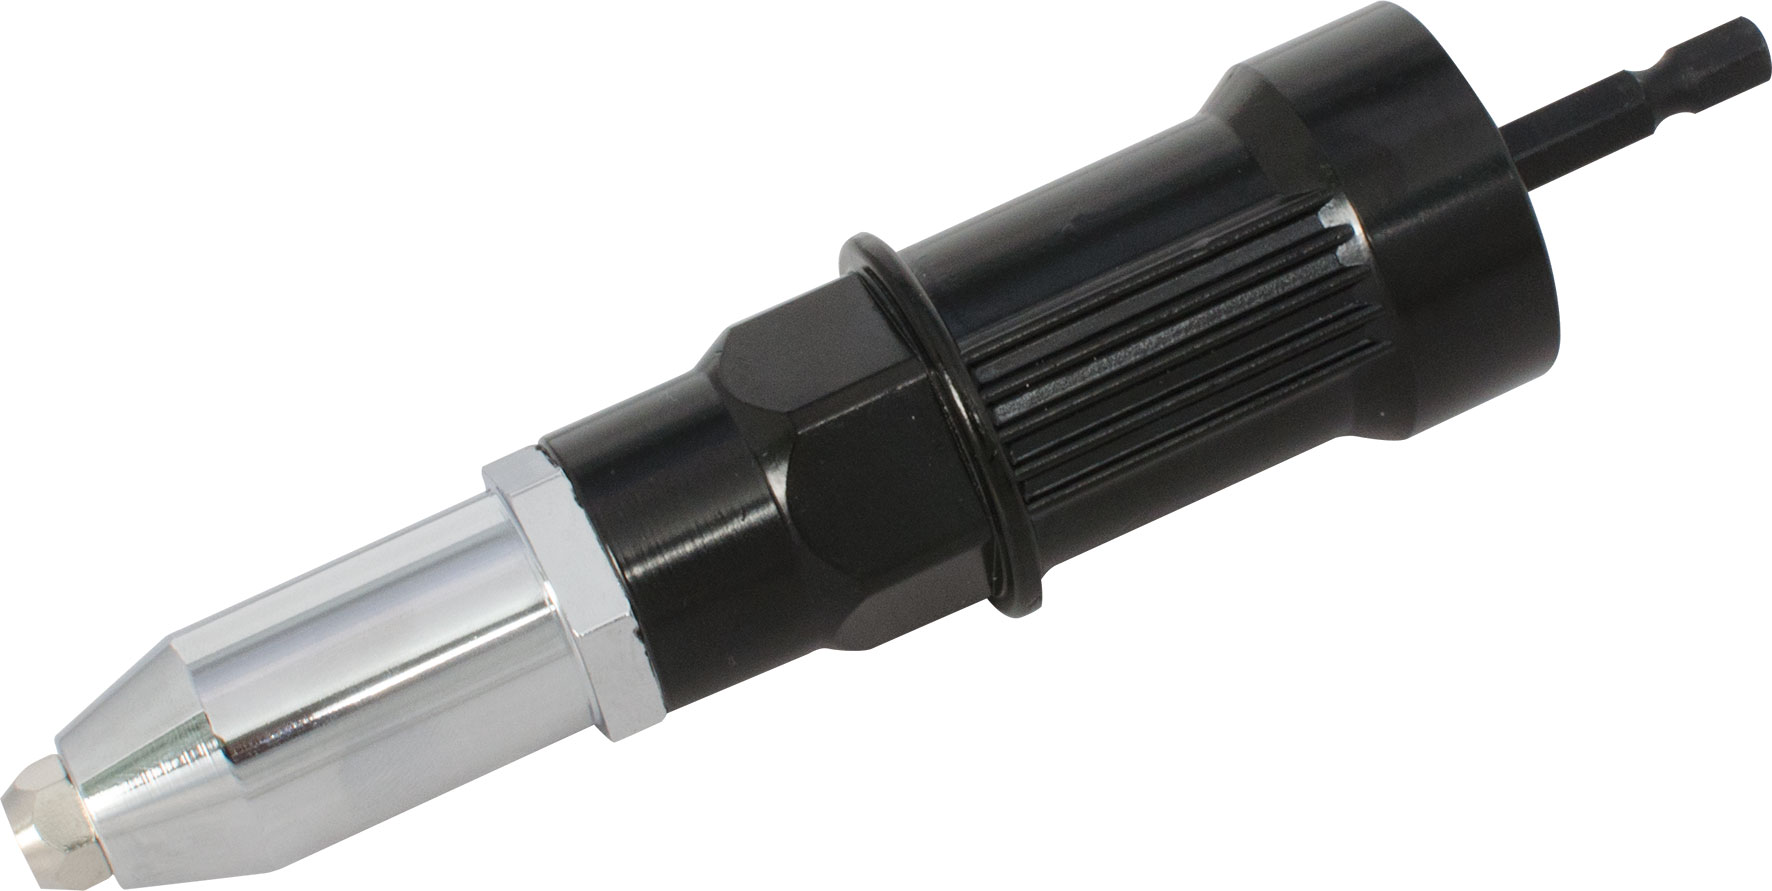 PROFI-Blindnietvorsatz-Adapter mit Haltegriff Zur Verarbeitung von Blindnieten der Durchmesser 3,0 / 3,2 / 4,0 / 4,8 / 5,0 / 6,4 mm